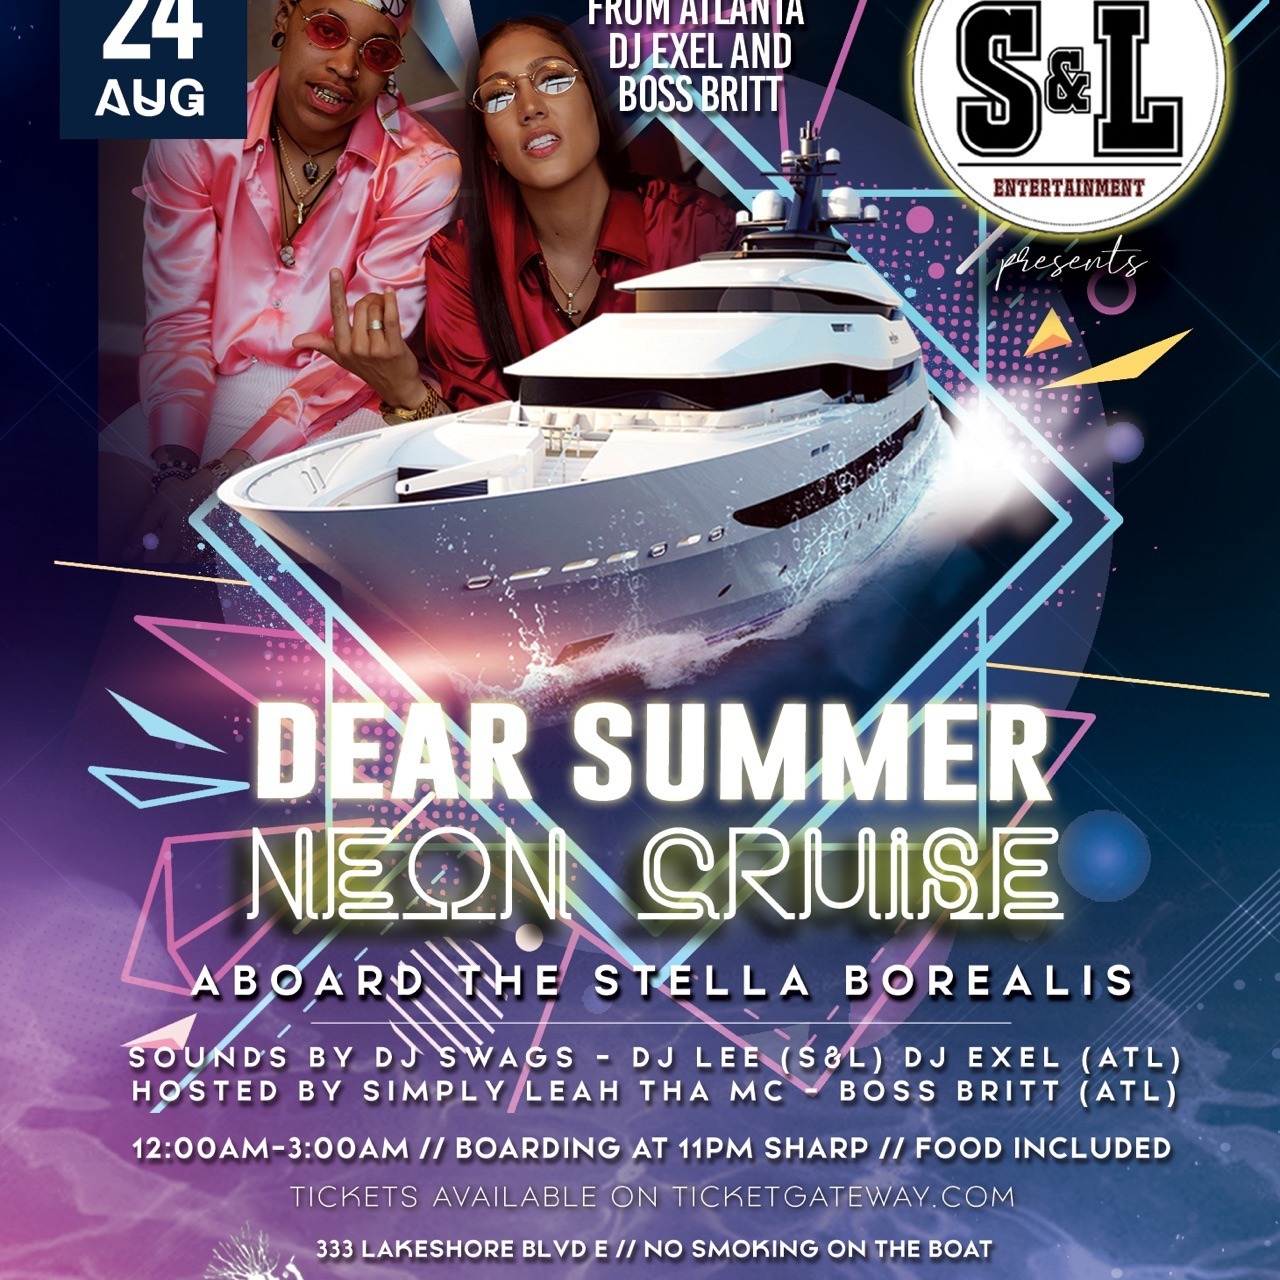 Dear Summer - Neon Cruise